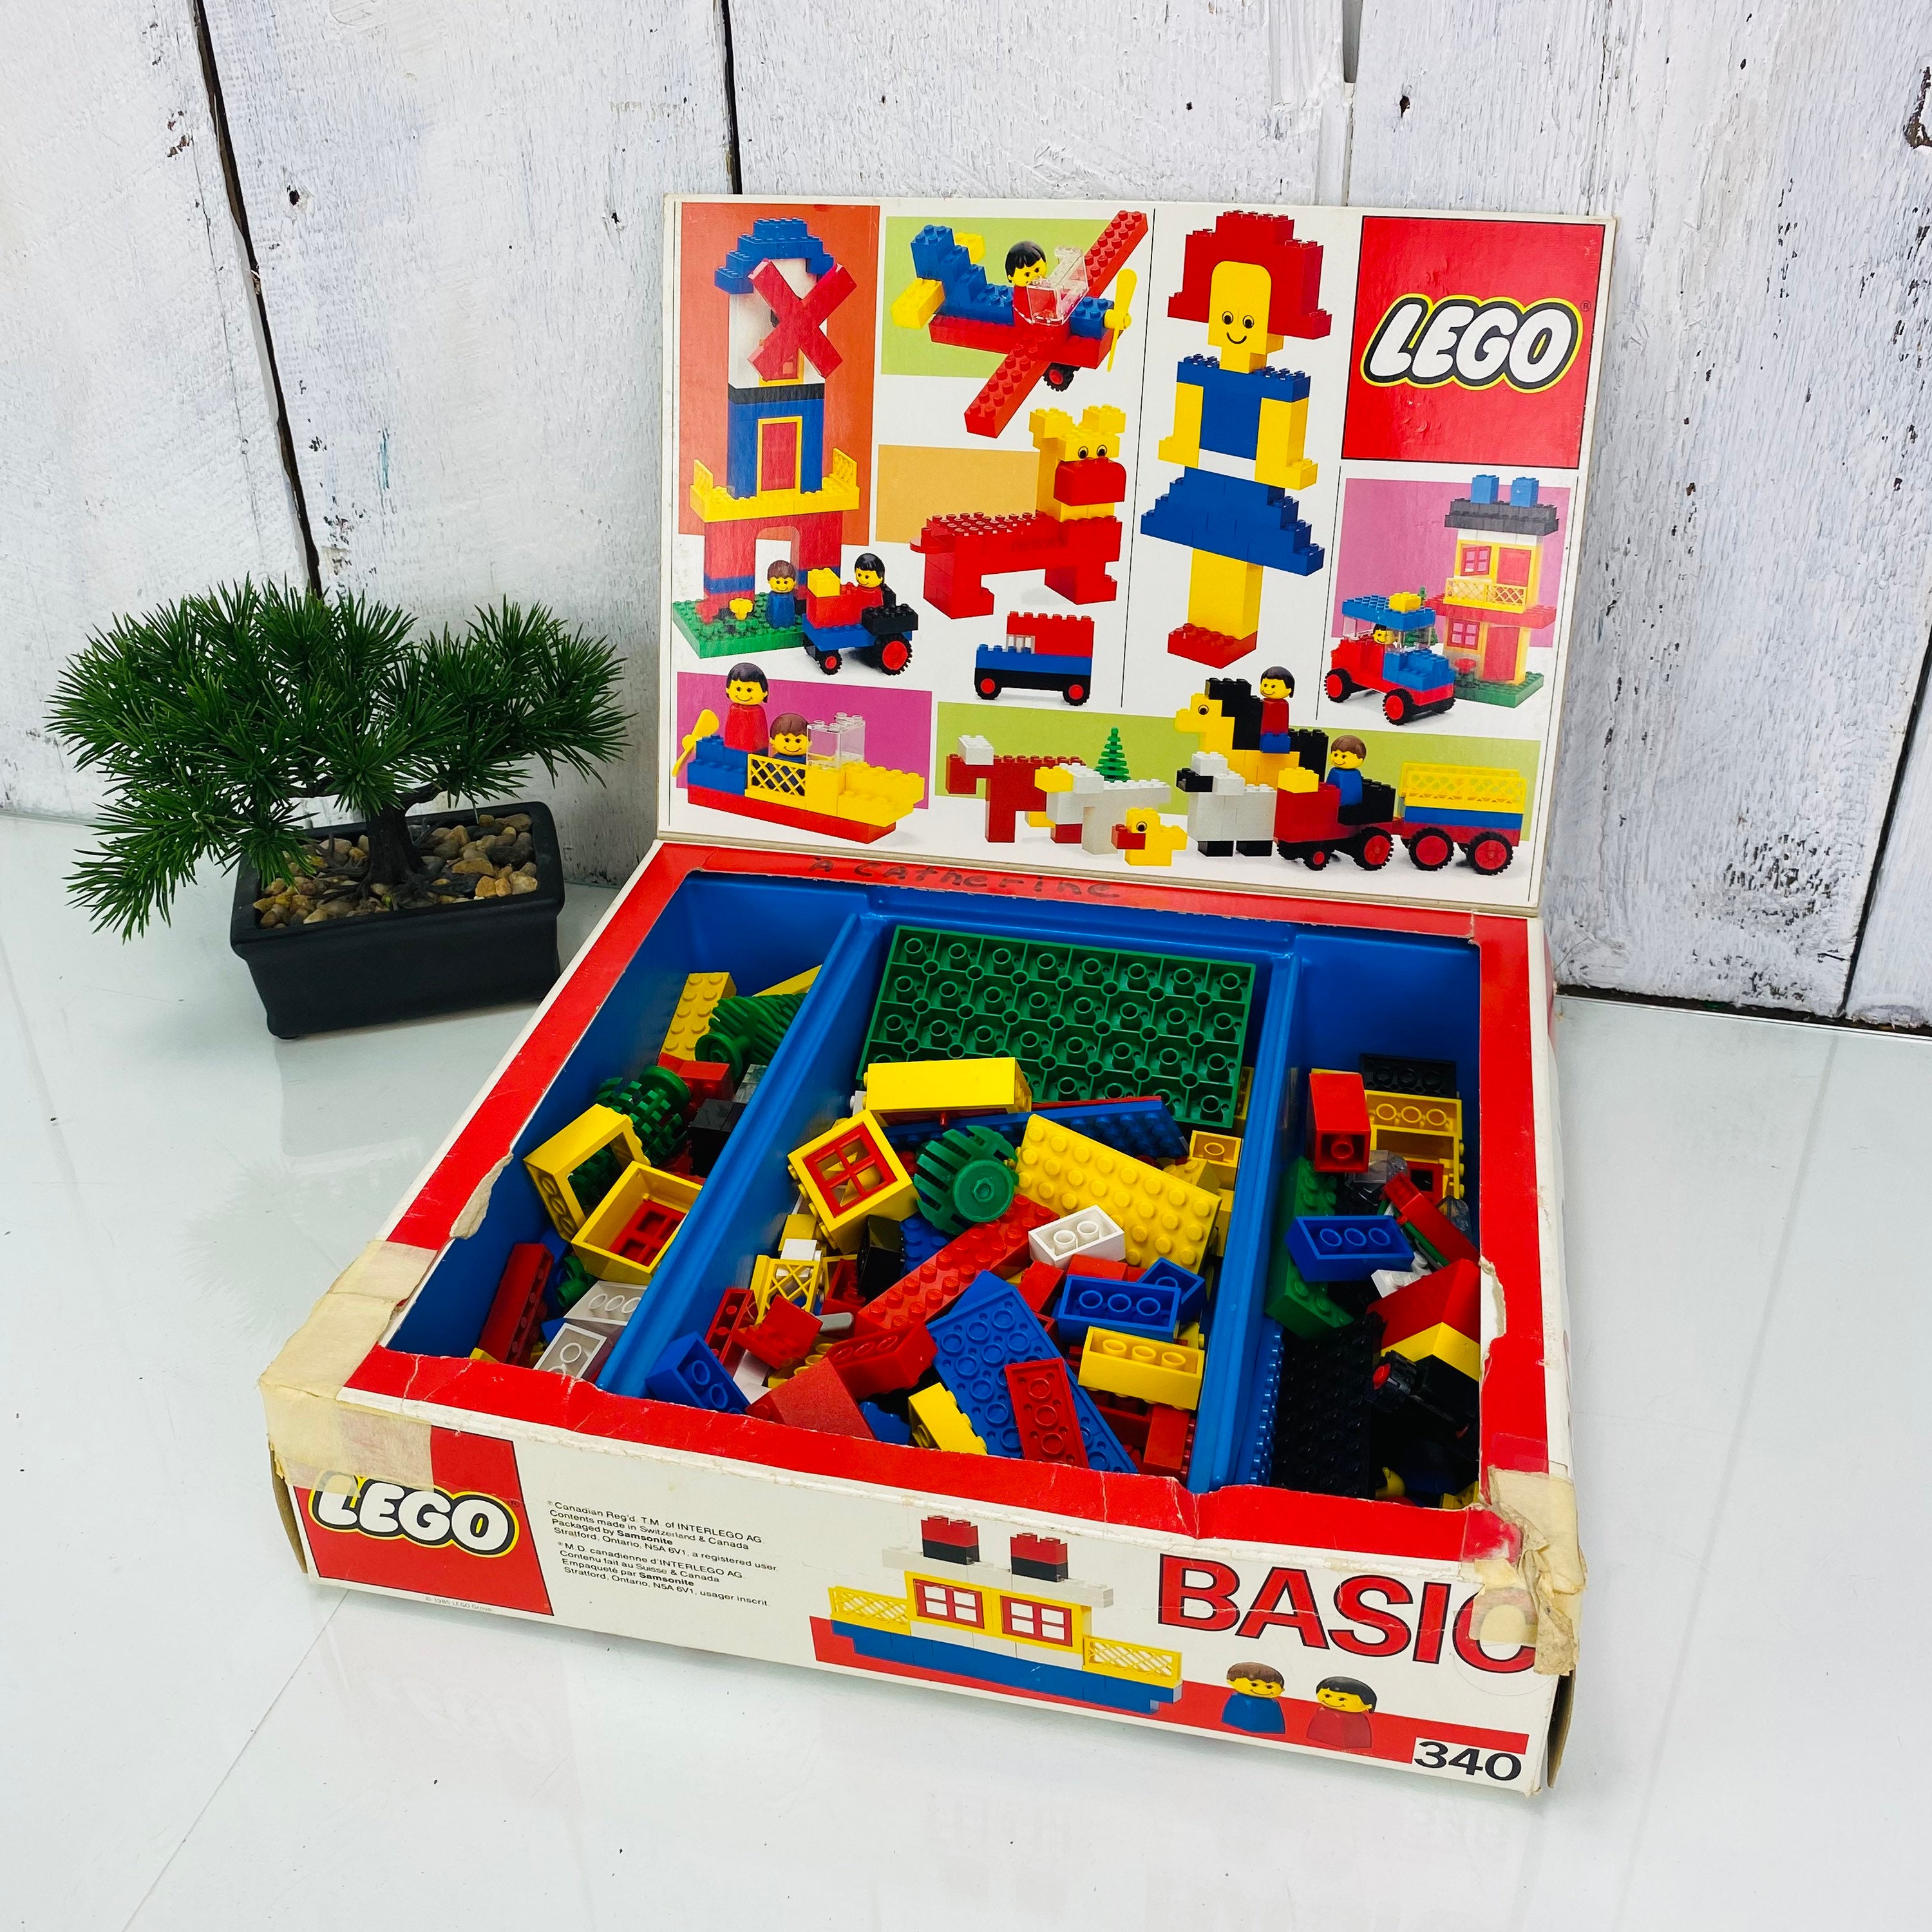 forhold betale sig Objector Vintage Old Lego Box Basic Set - Etsy